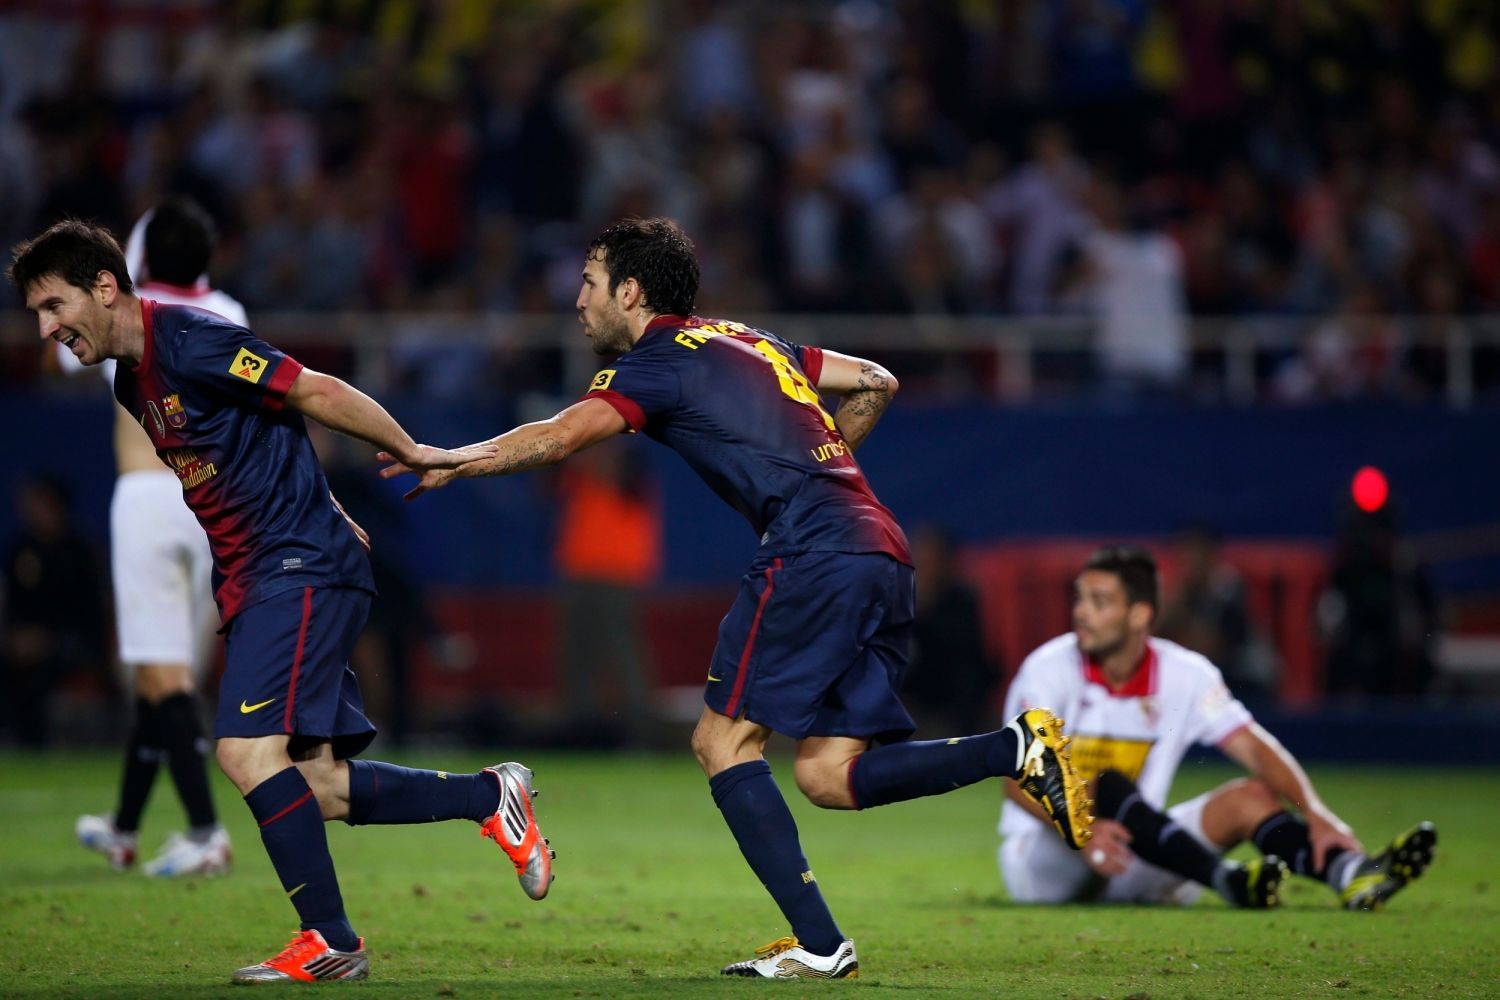 Fotbalisté Barcelony Lionel Messi (vlevo) a Cesc Fabregas slaví gól v utkání španělské La Ligy 2012/13 se Sevillou.